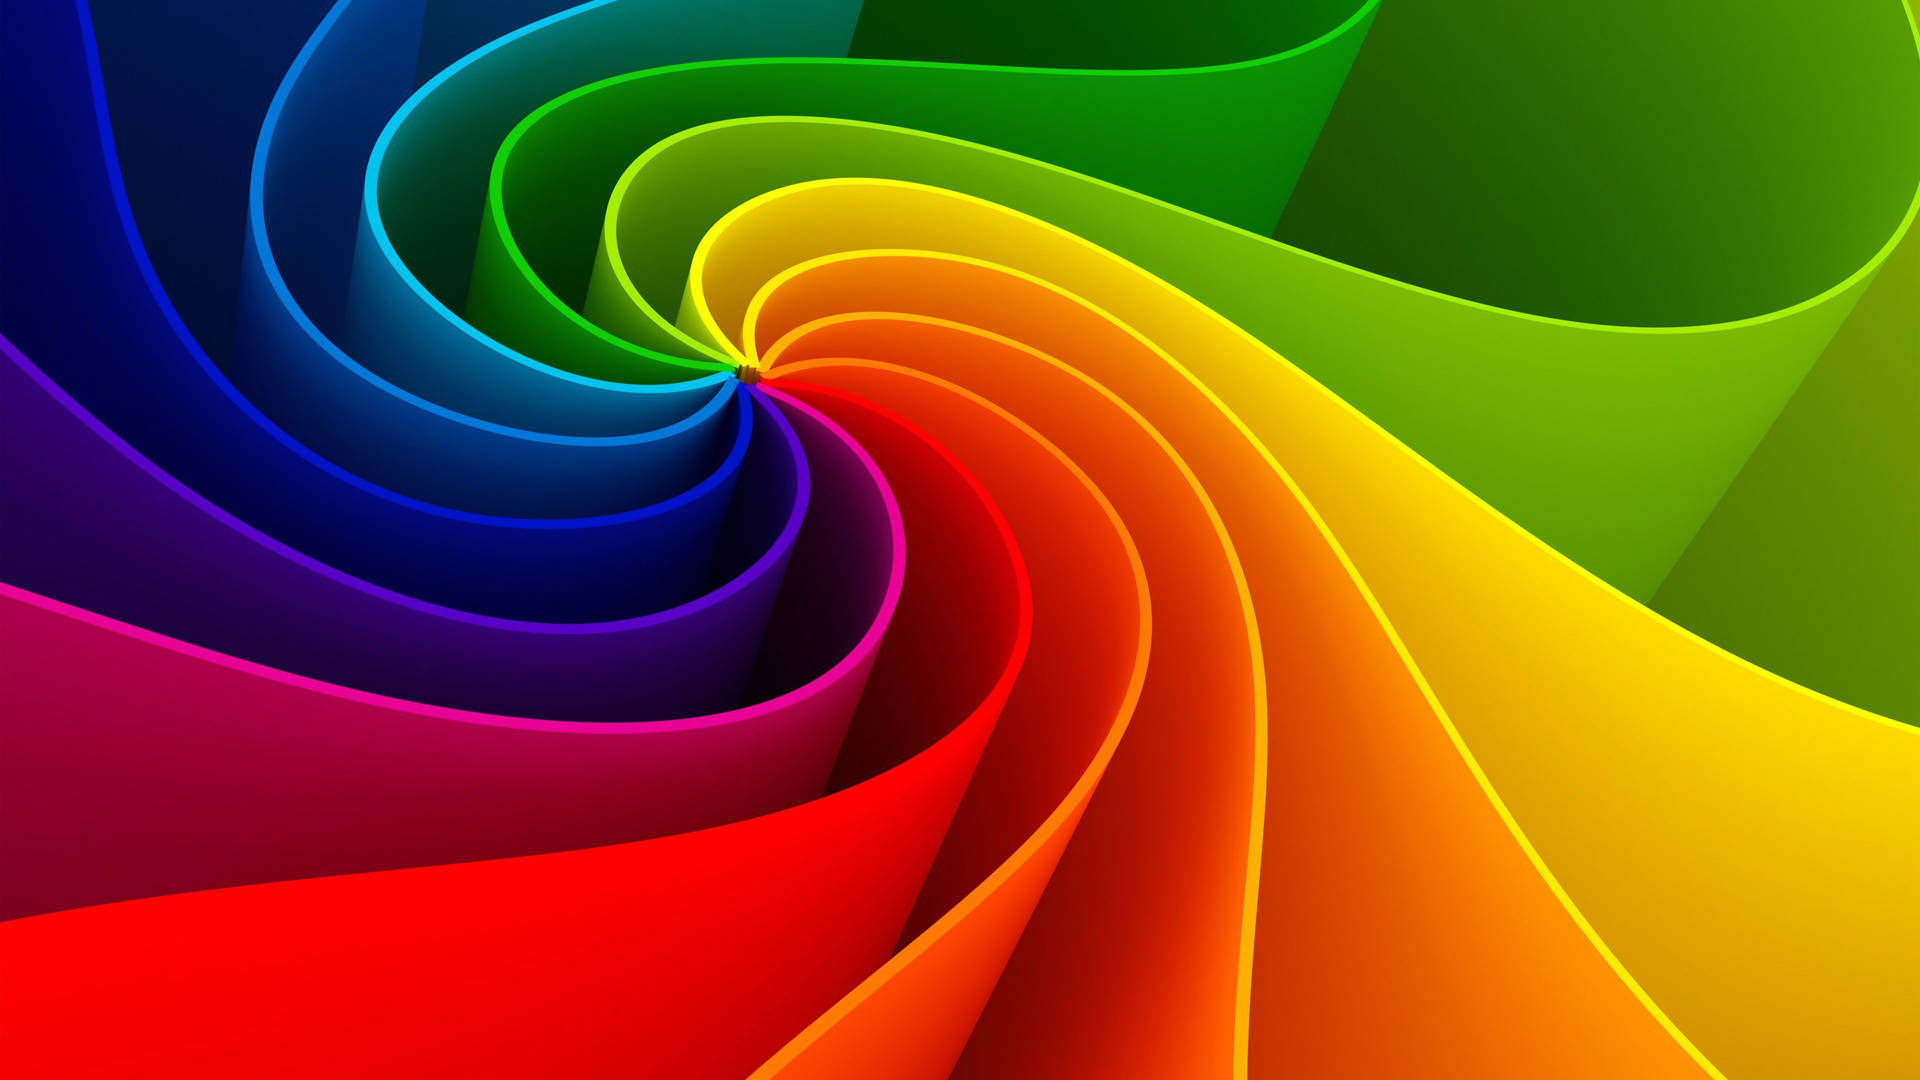 3d Spiral Wave Rainbow Background Wallpaper